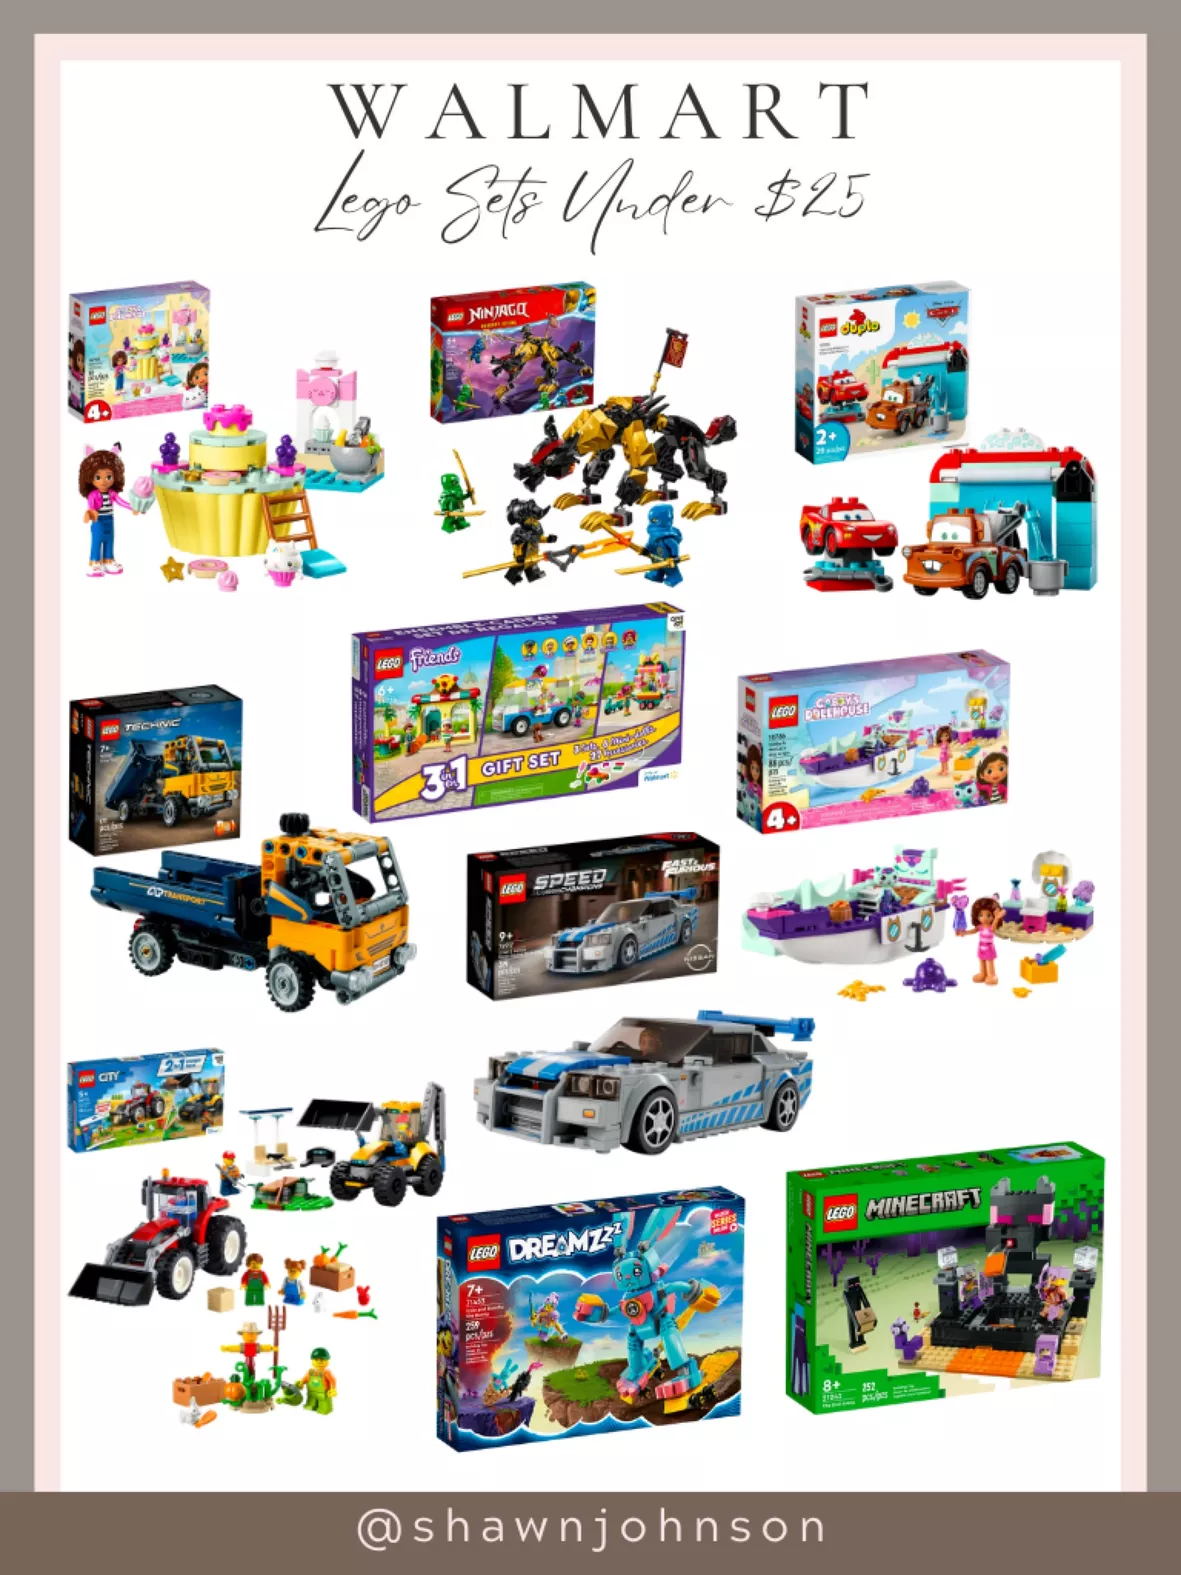 Lego VIP Gifting Set